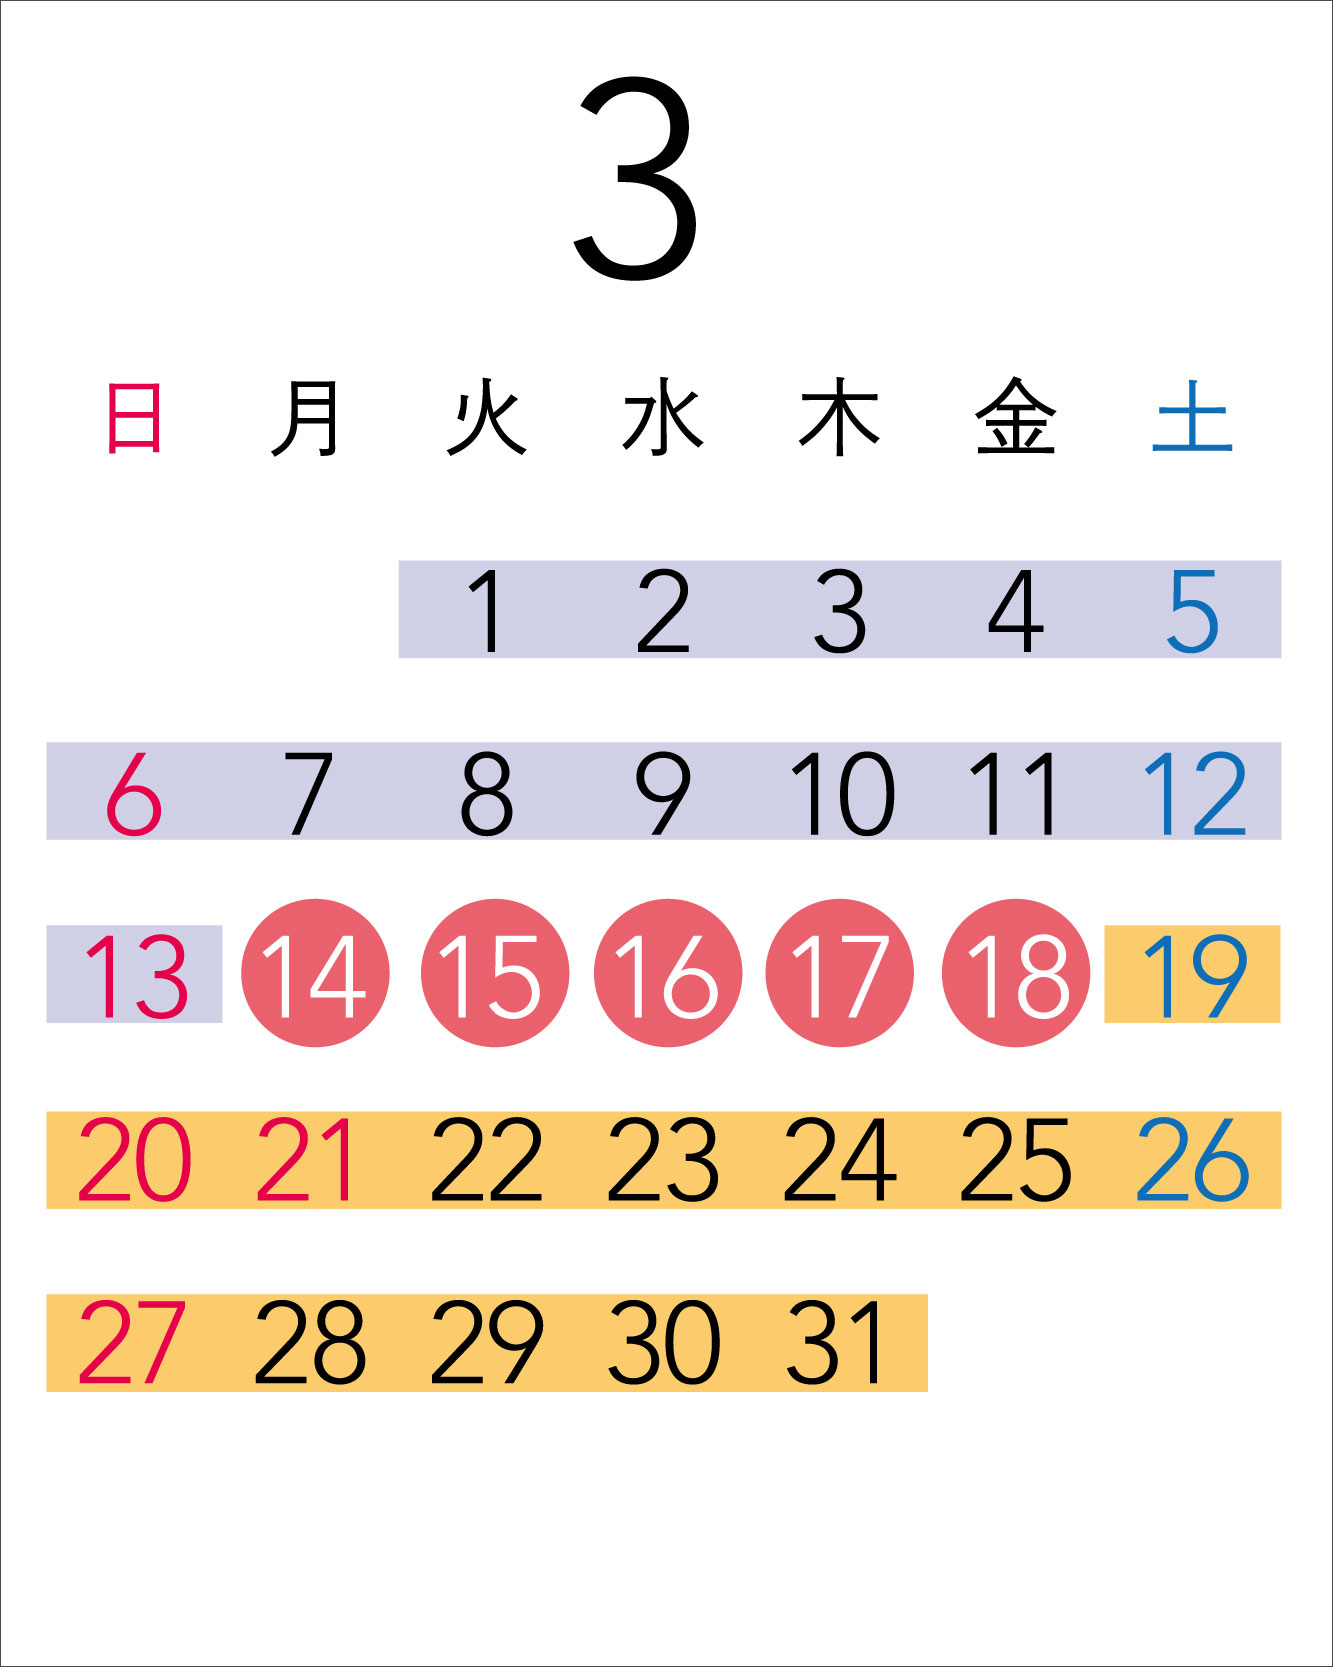 Calendar in March